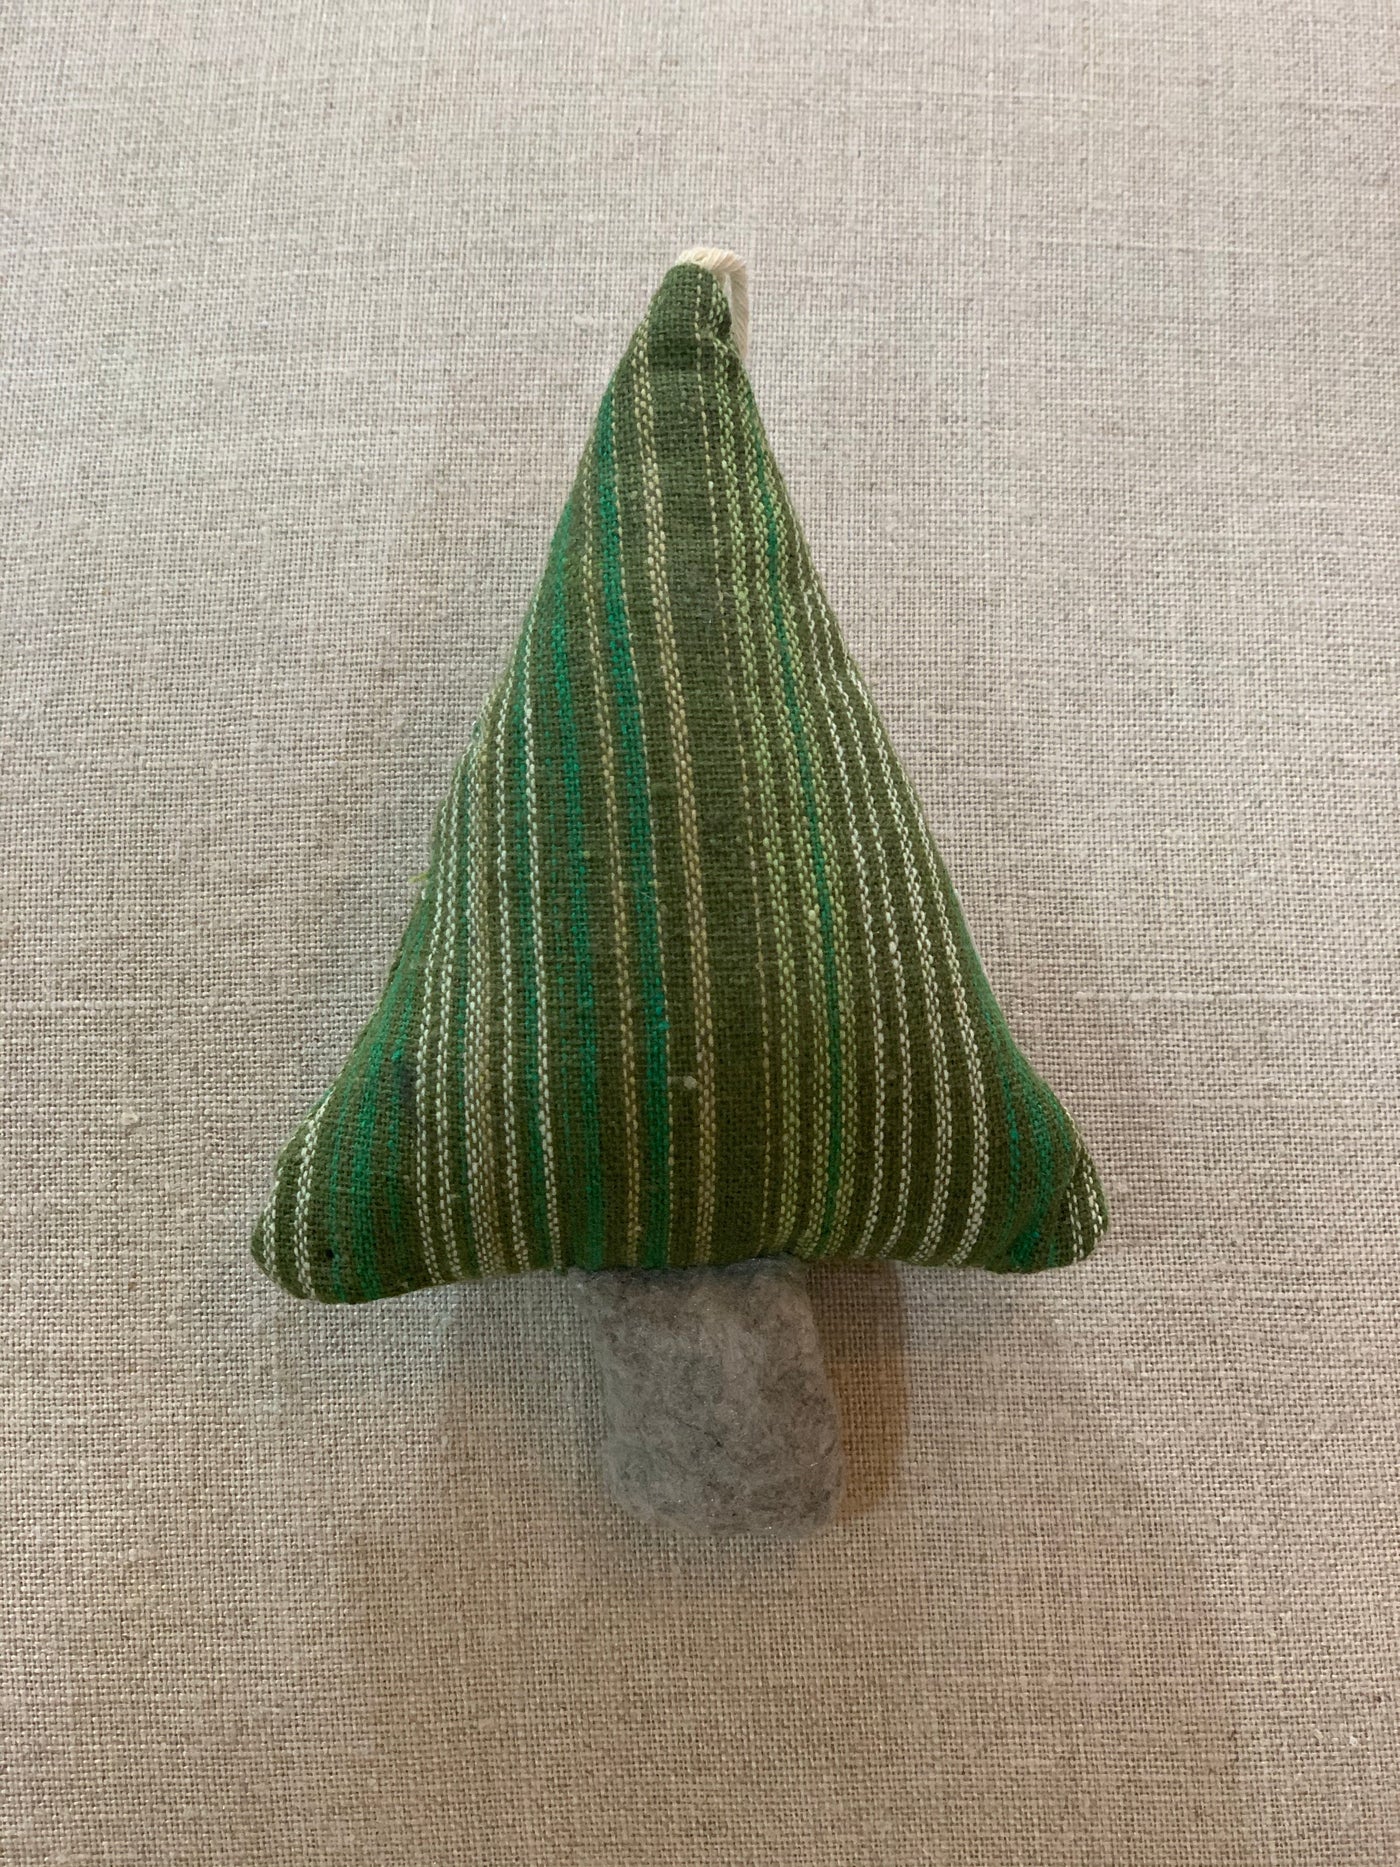 Patterned Tree Ornament - Little Prairie Girl